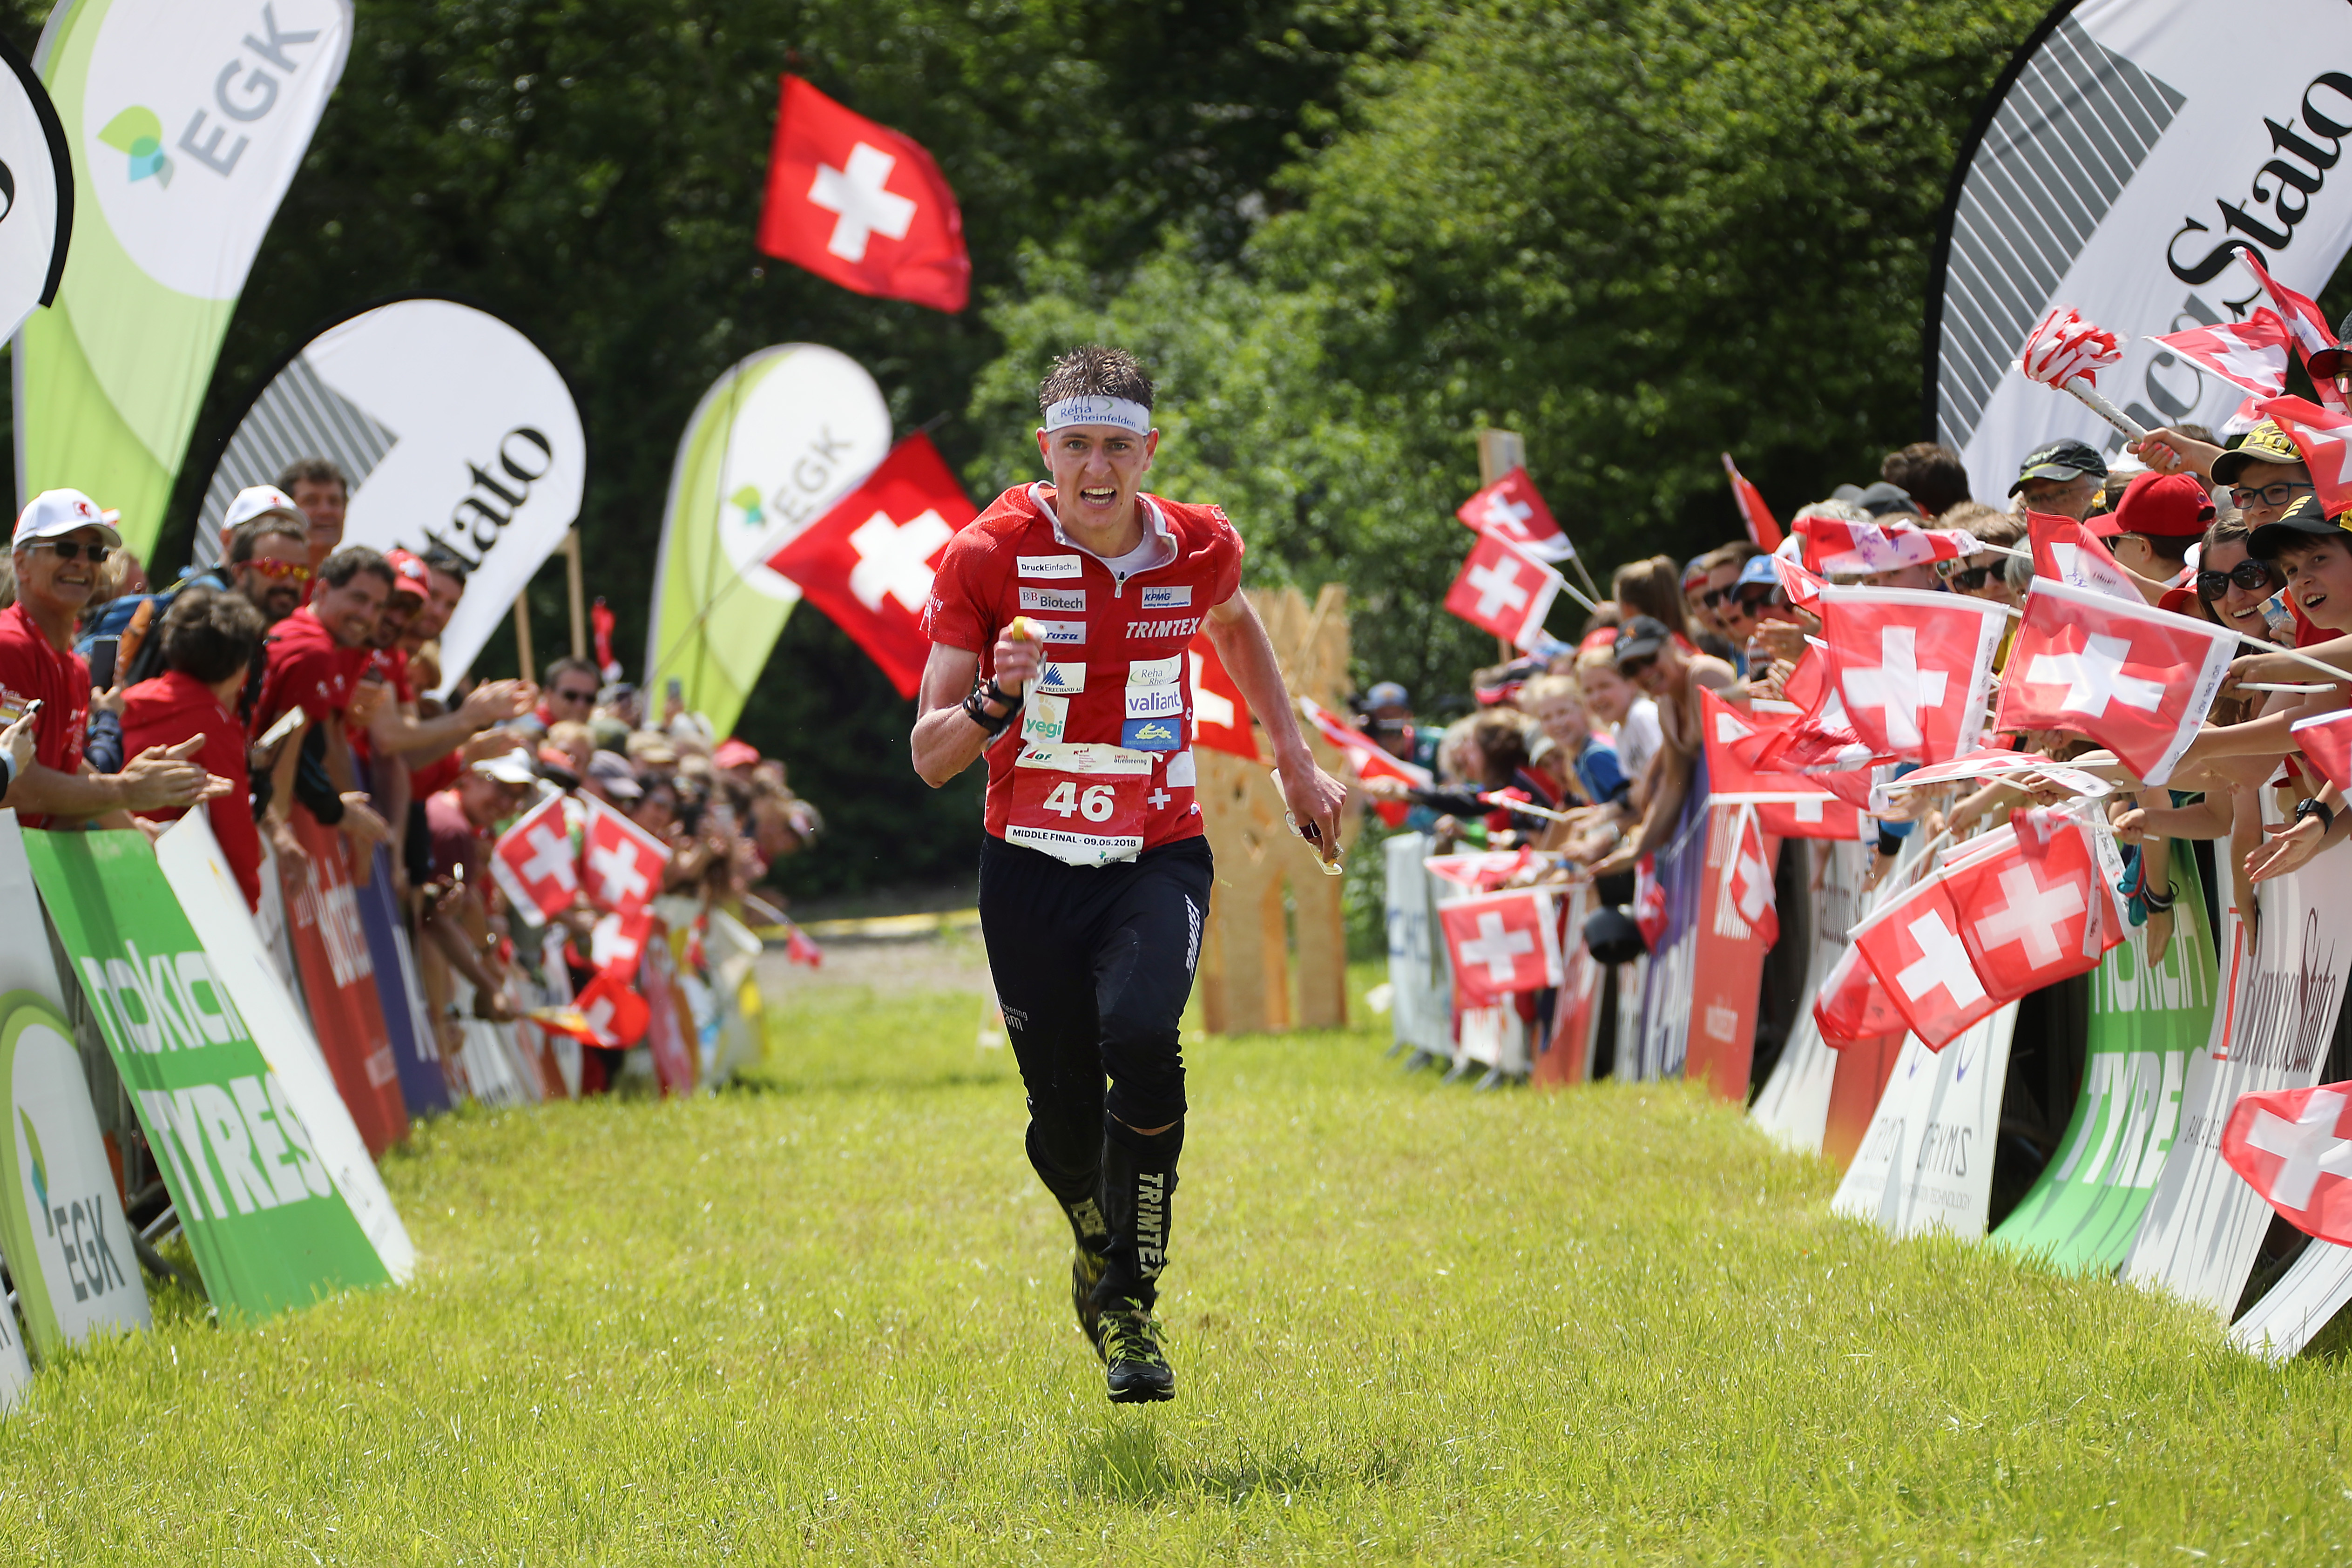 Zieleinlauf von OL-Läufer Matthias Kyburz an der EM im Tessin